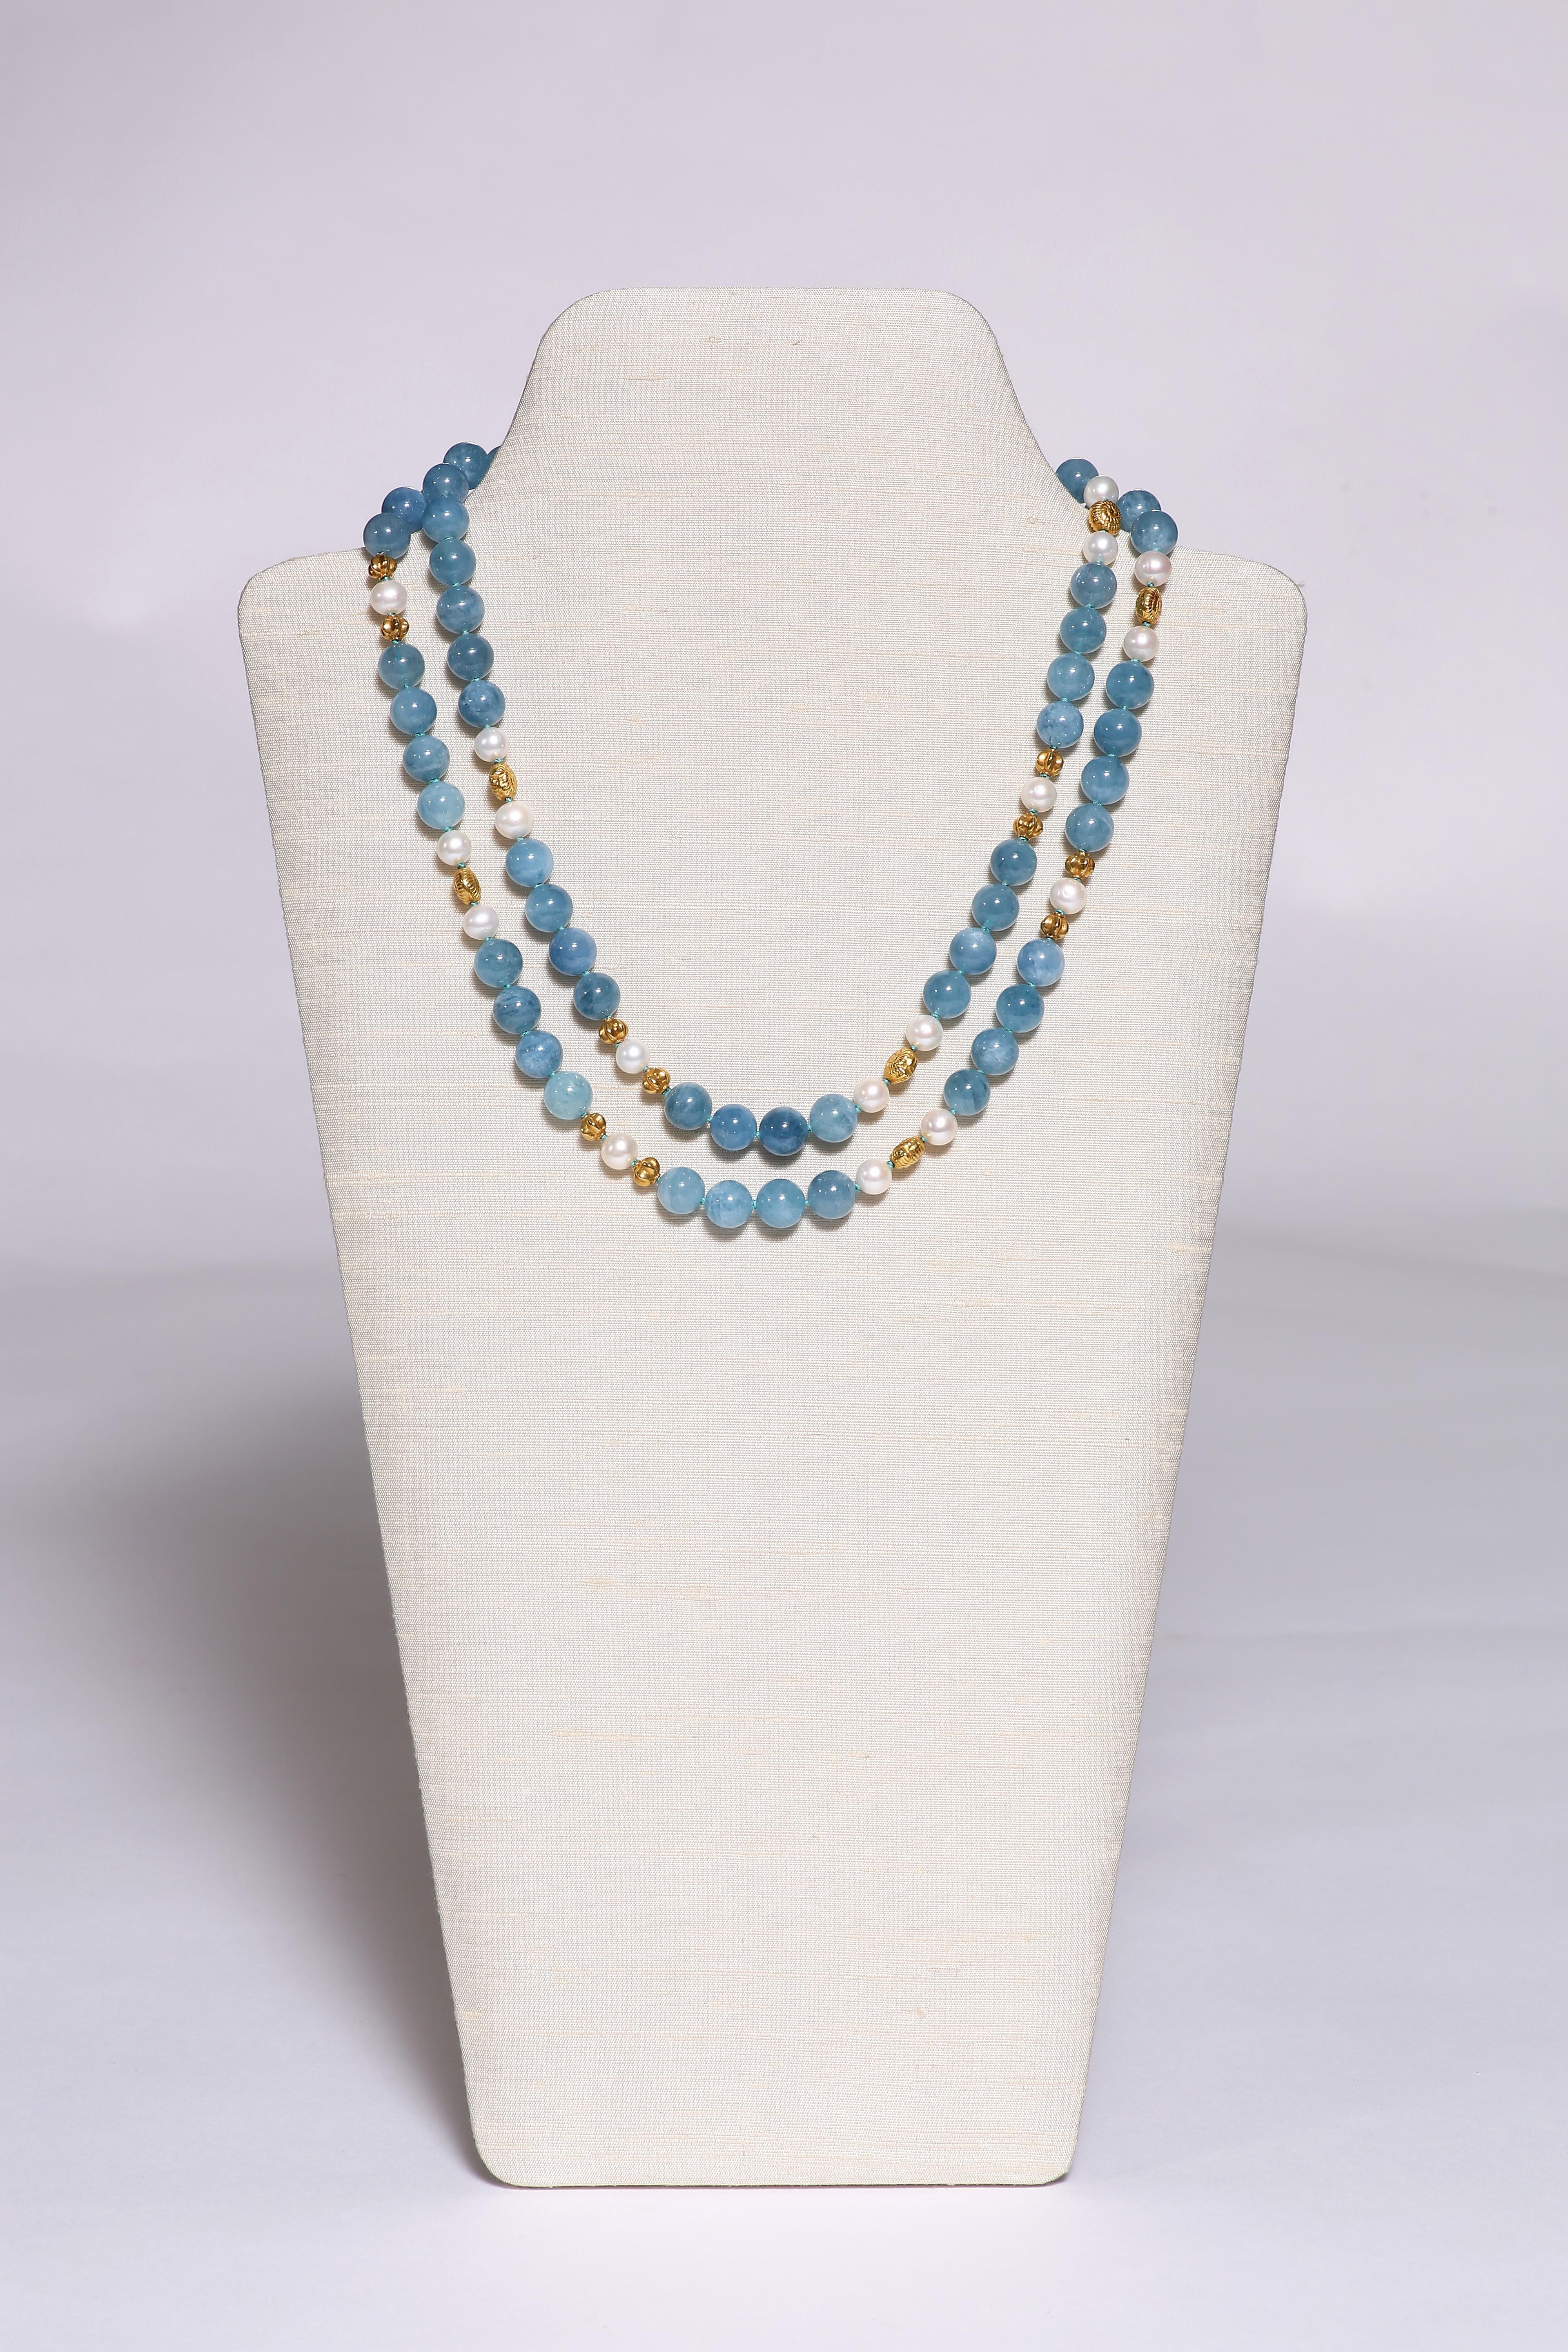 Le long collier d'aigue-marine bleue noble, espacé de perles d'eau douce et de perles en or 18 carats striées ou en forme de coquillages, est long de 41 3/4